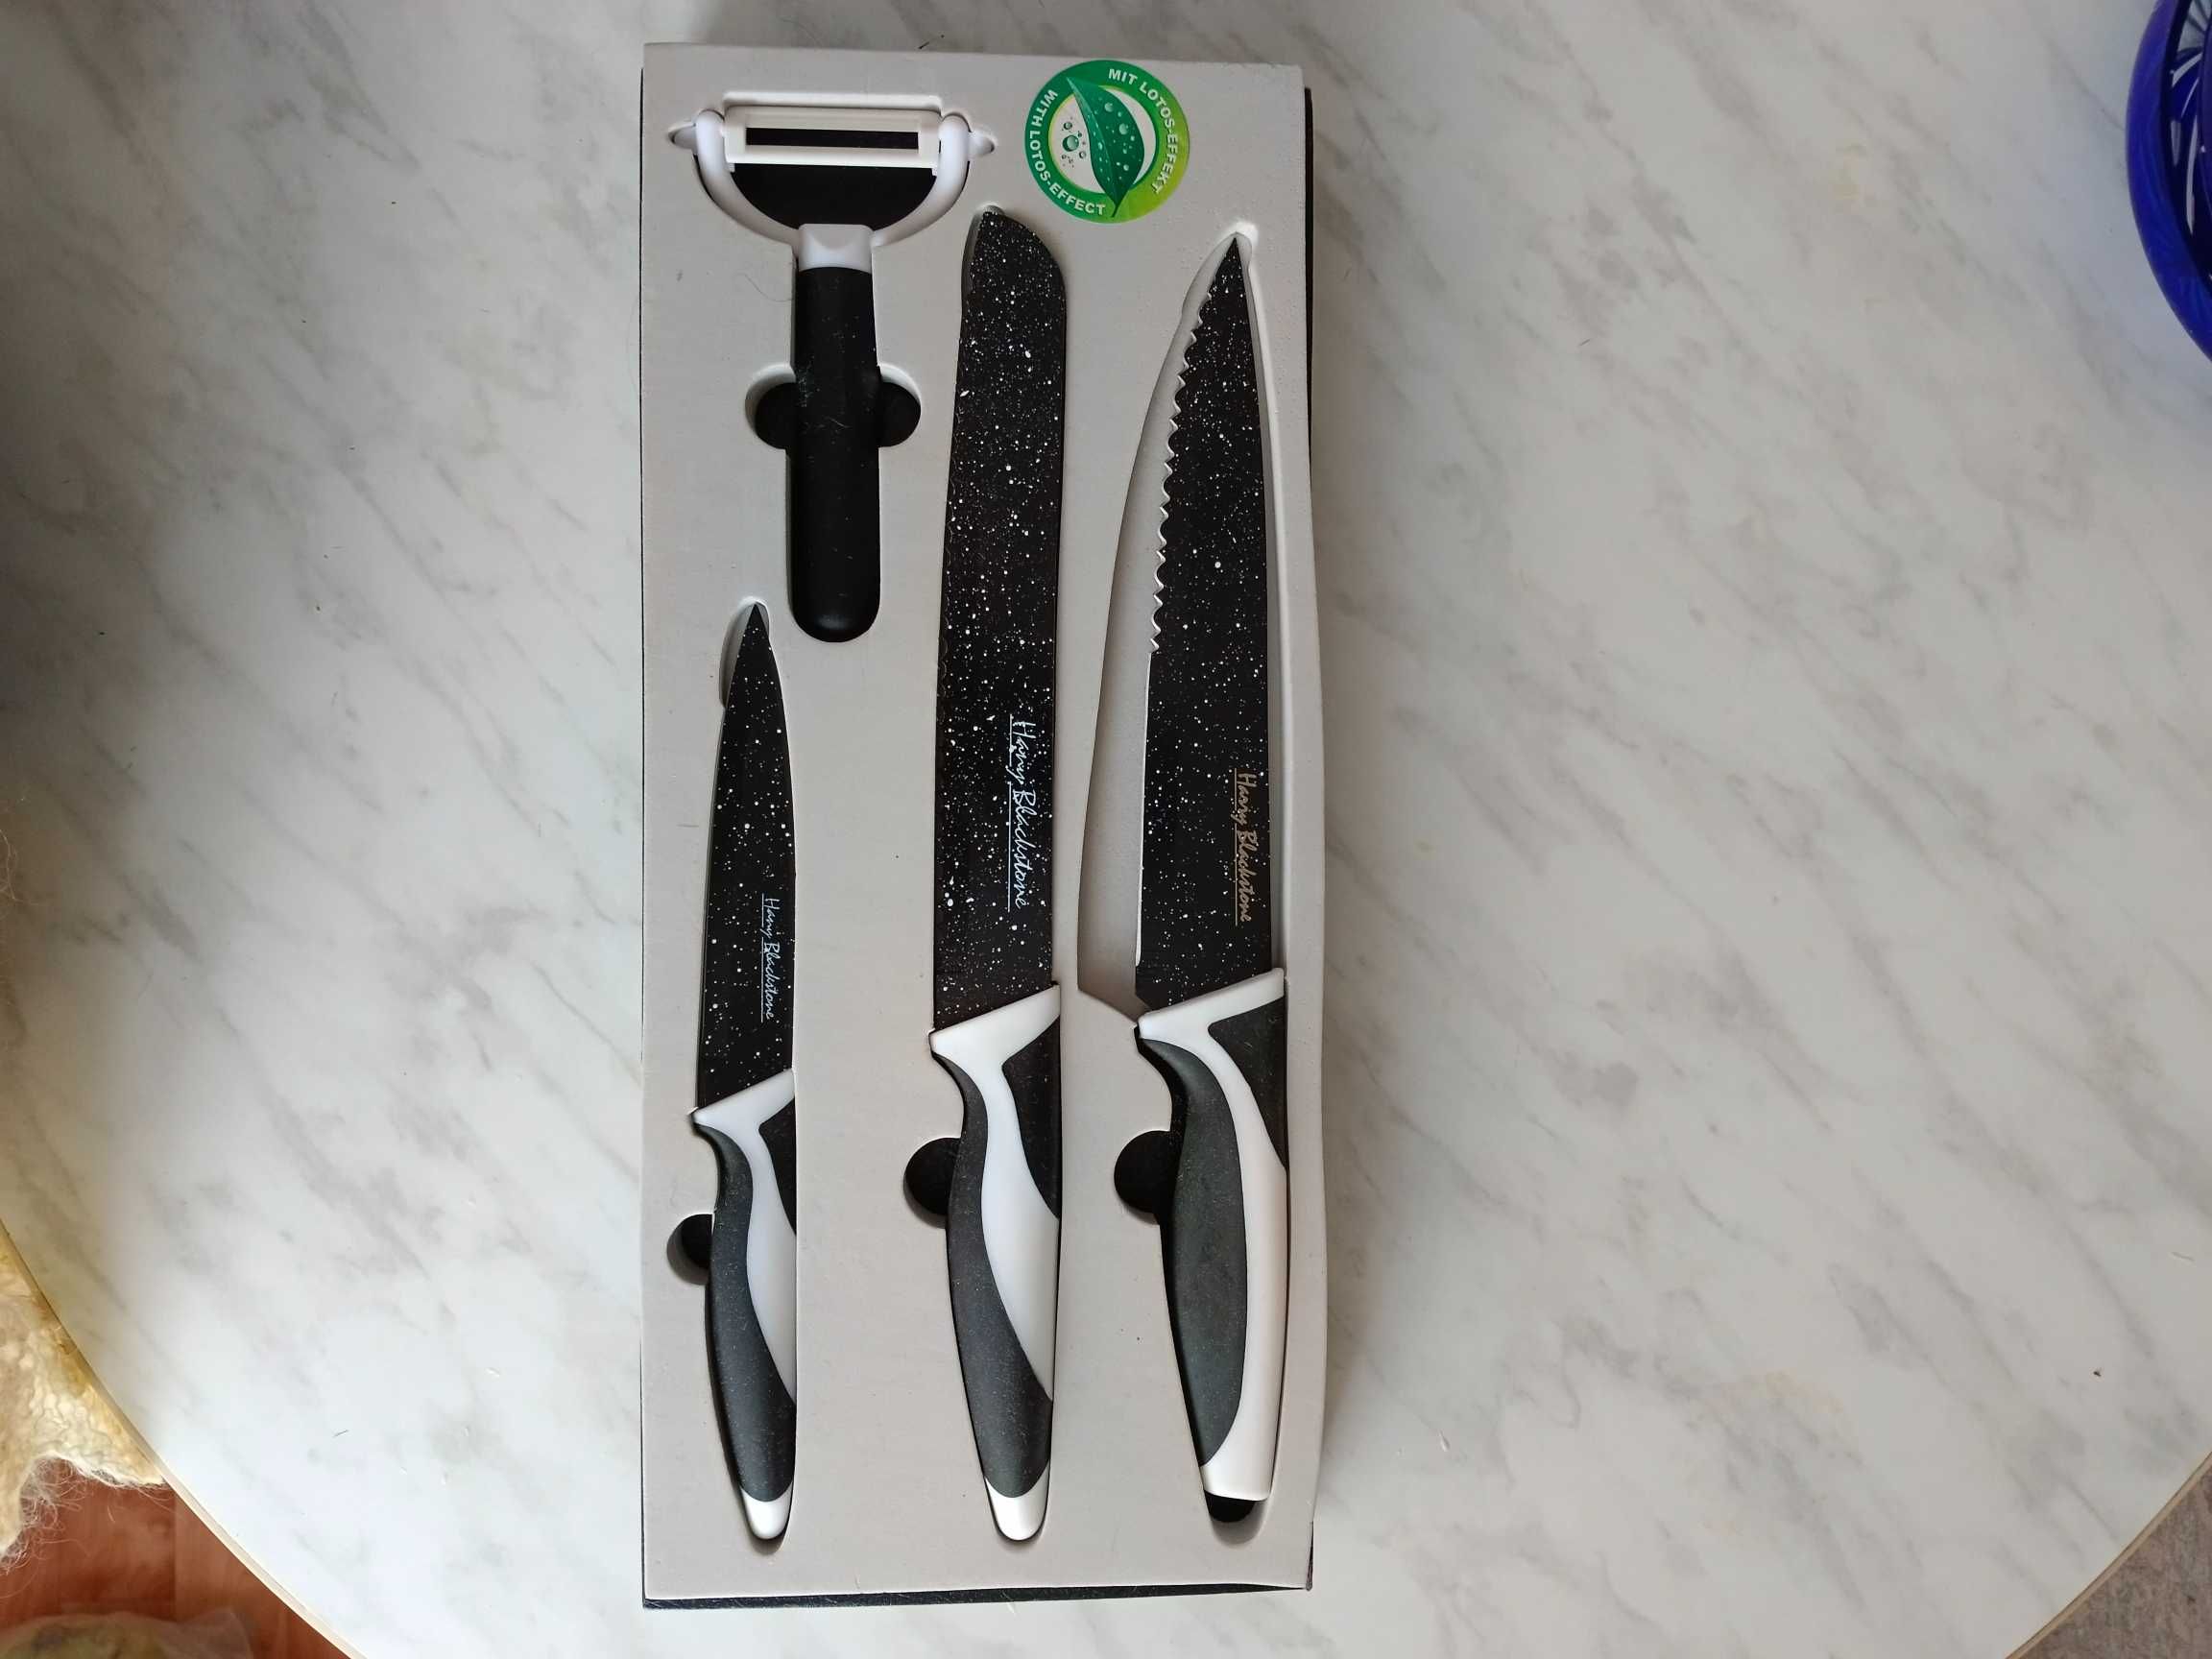 Комплект металокерамических ножей HARRY BLACKSTONE Австрия